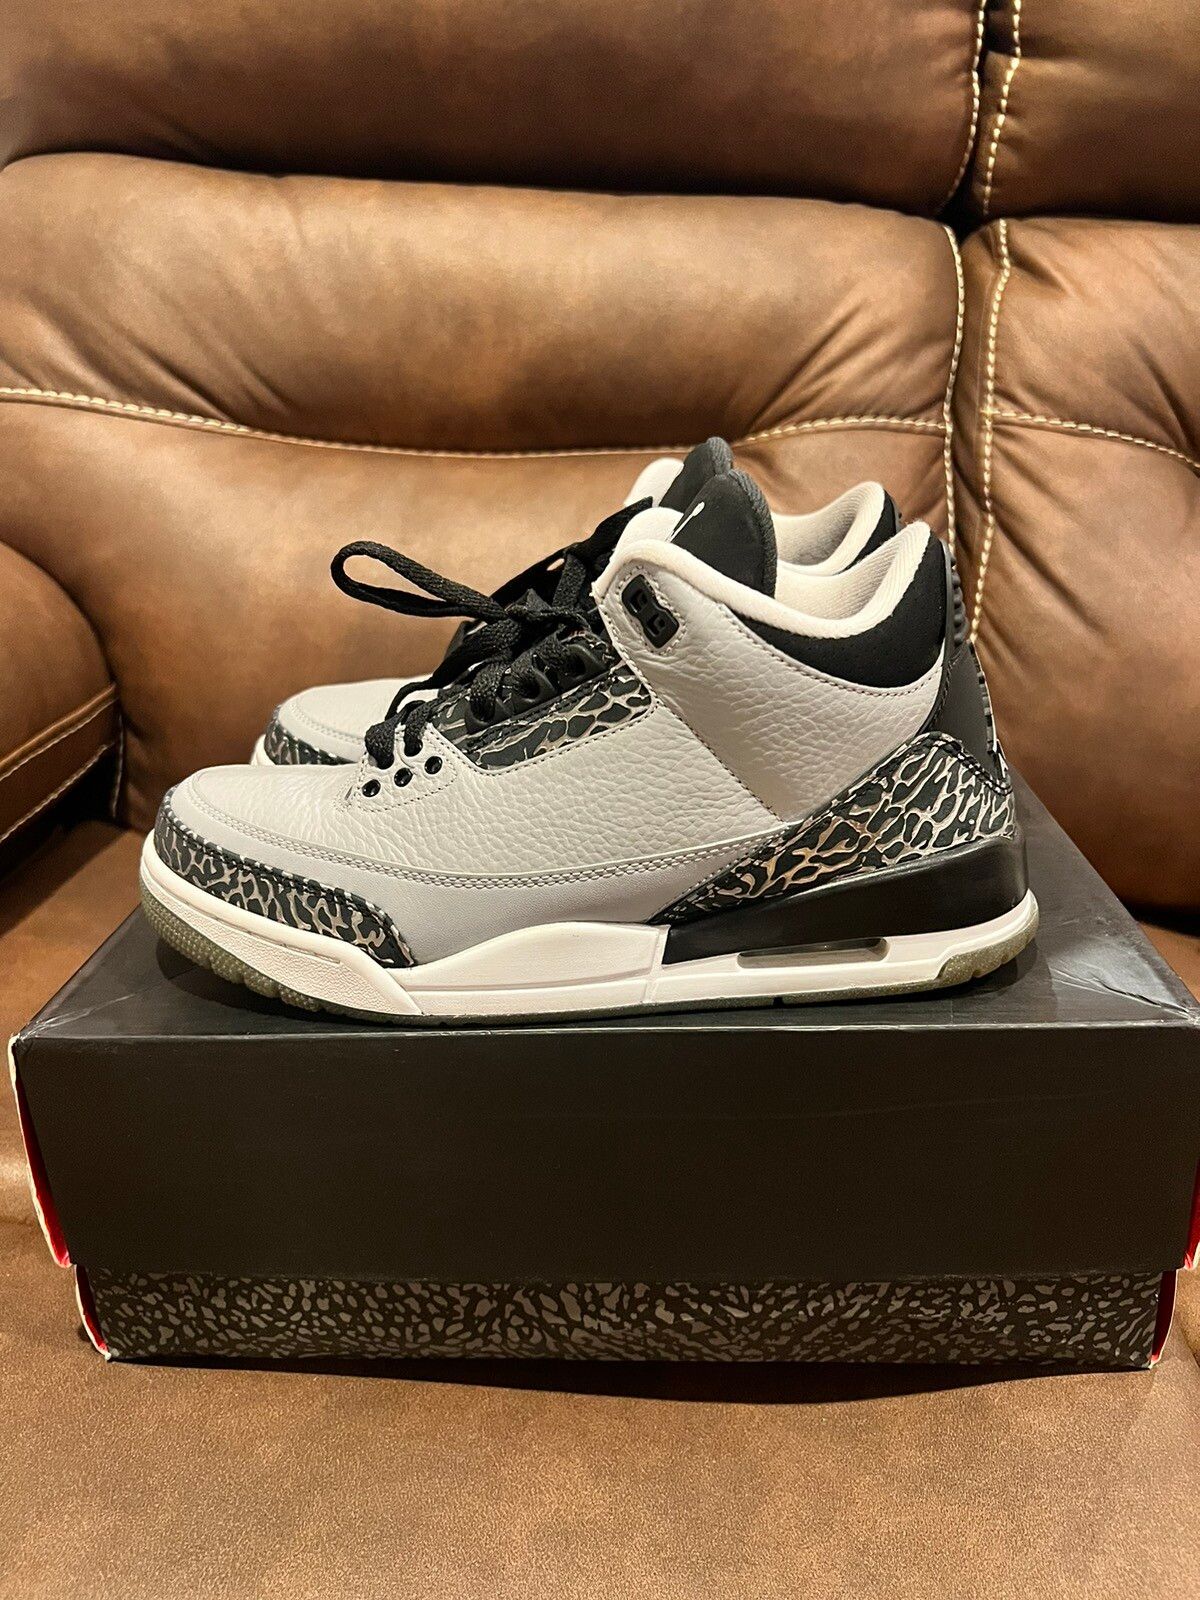 Pre-owned Jordan Nike Jordan 3 Retro Wolf Grey Shoes